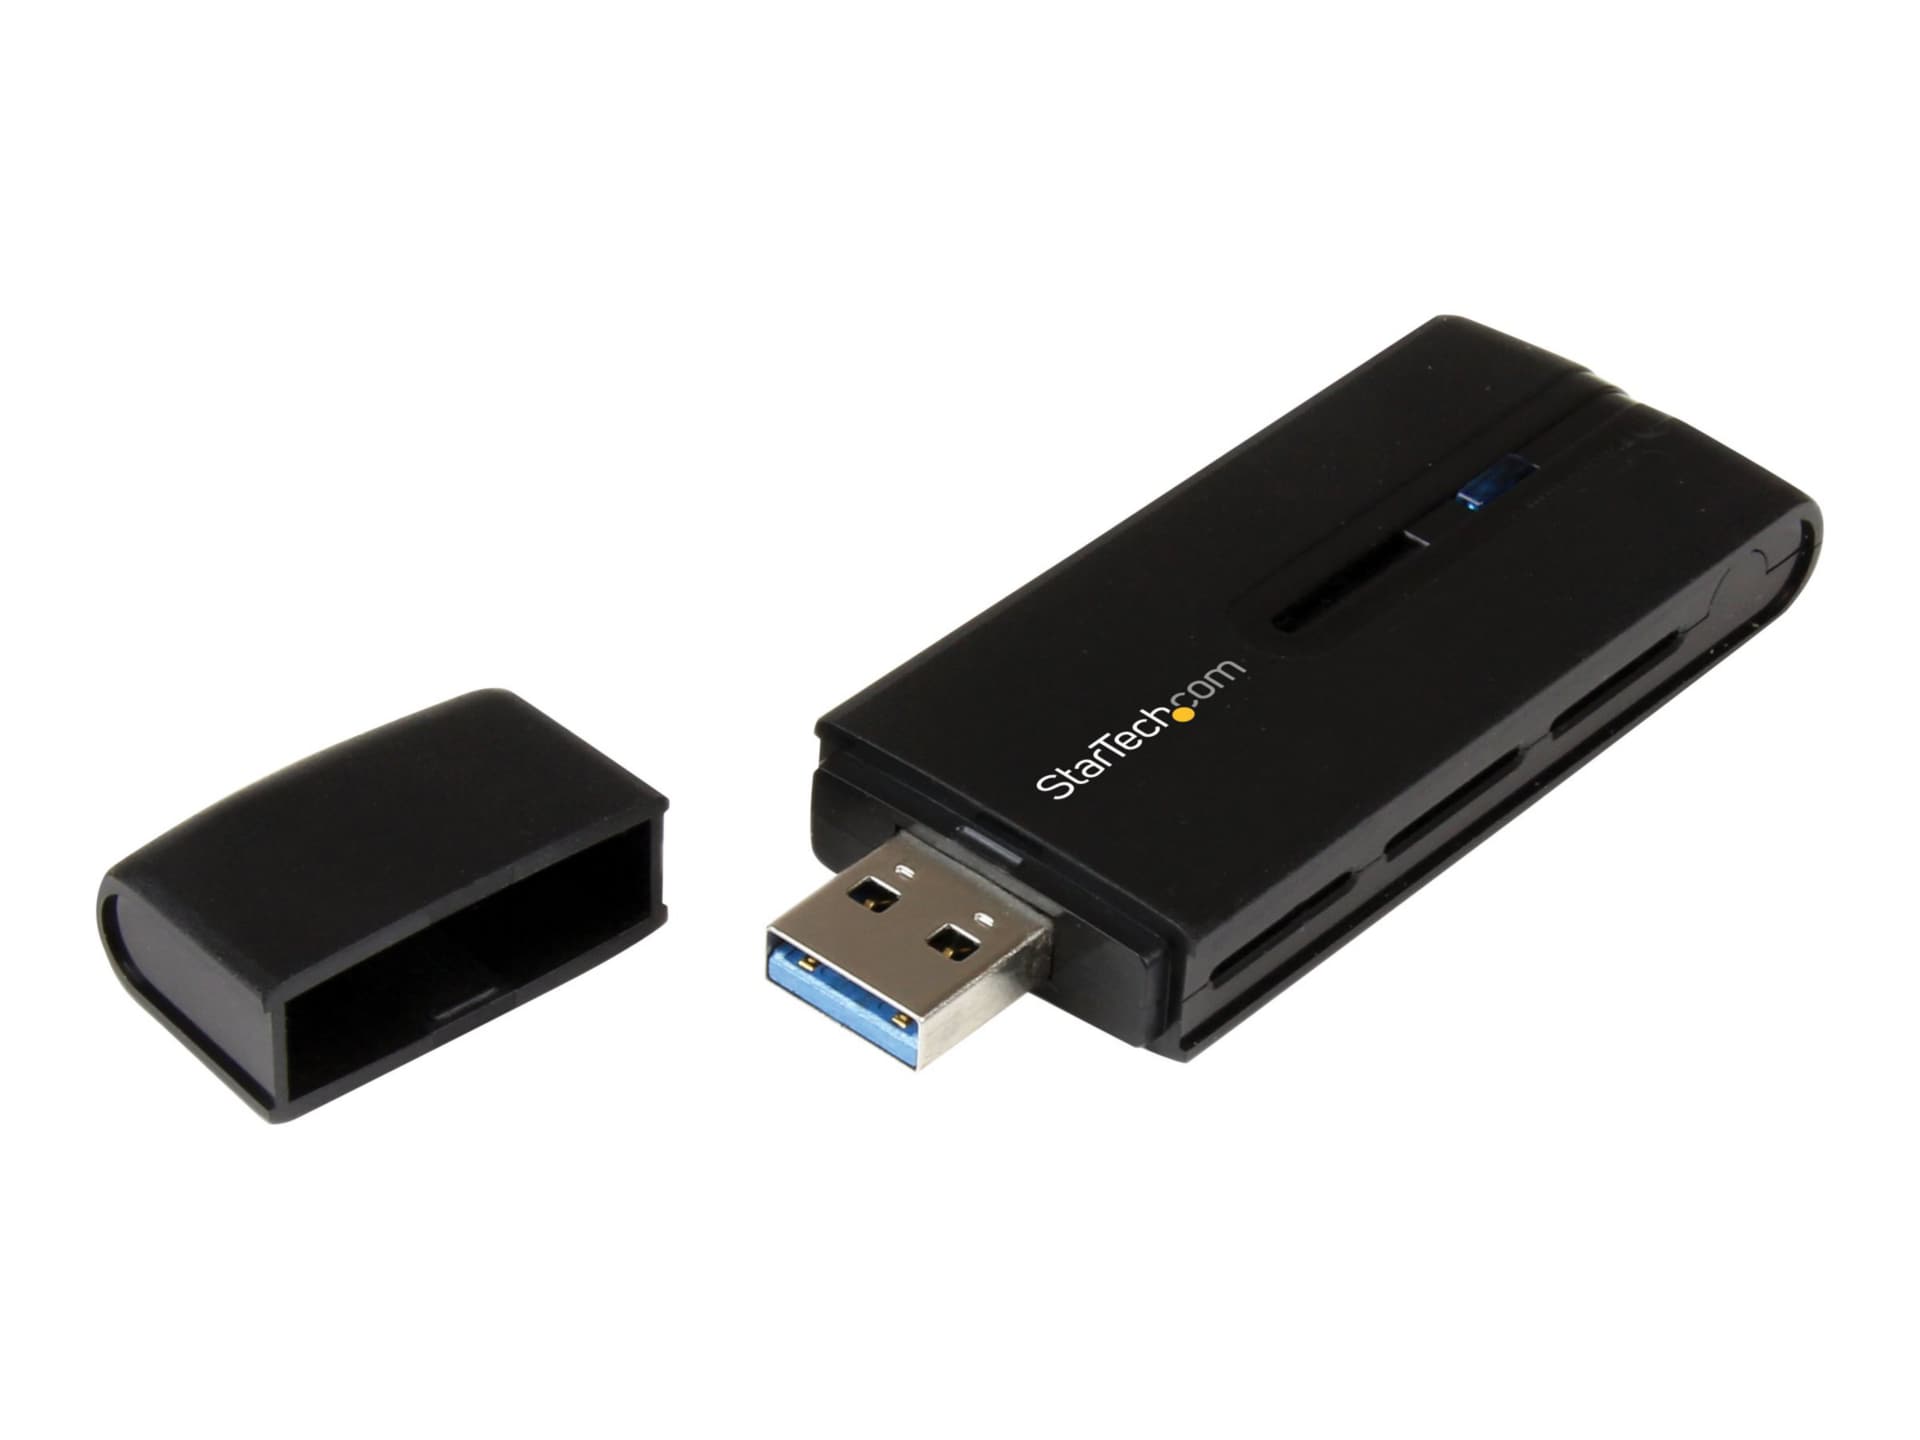 USB Wifi Adapter - USB 3.0 Wireless Network 802.11ac Dual-Band - USB867WAC22 - Adapters - CDW.com